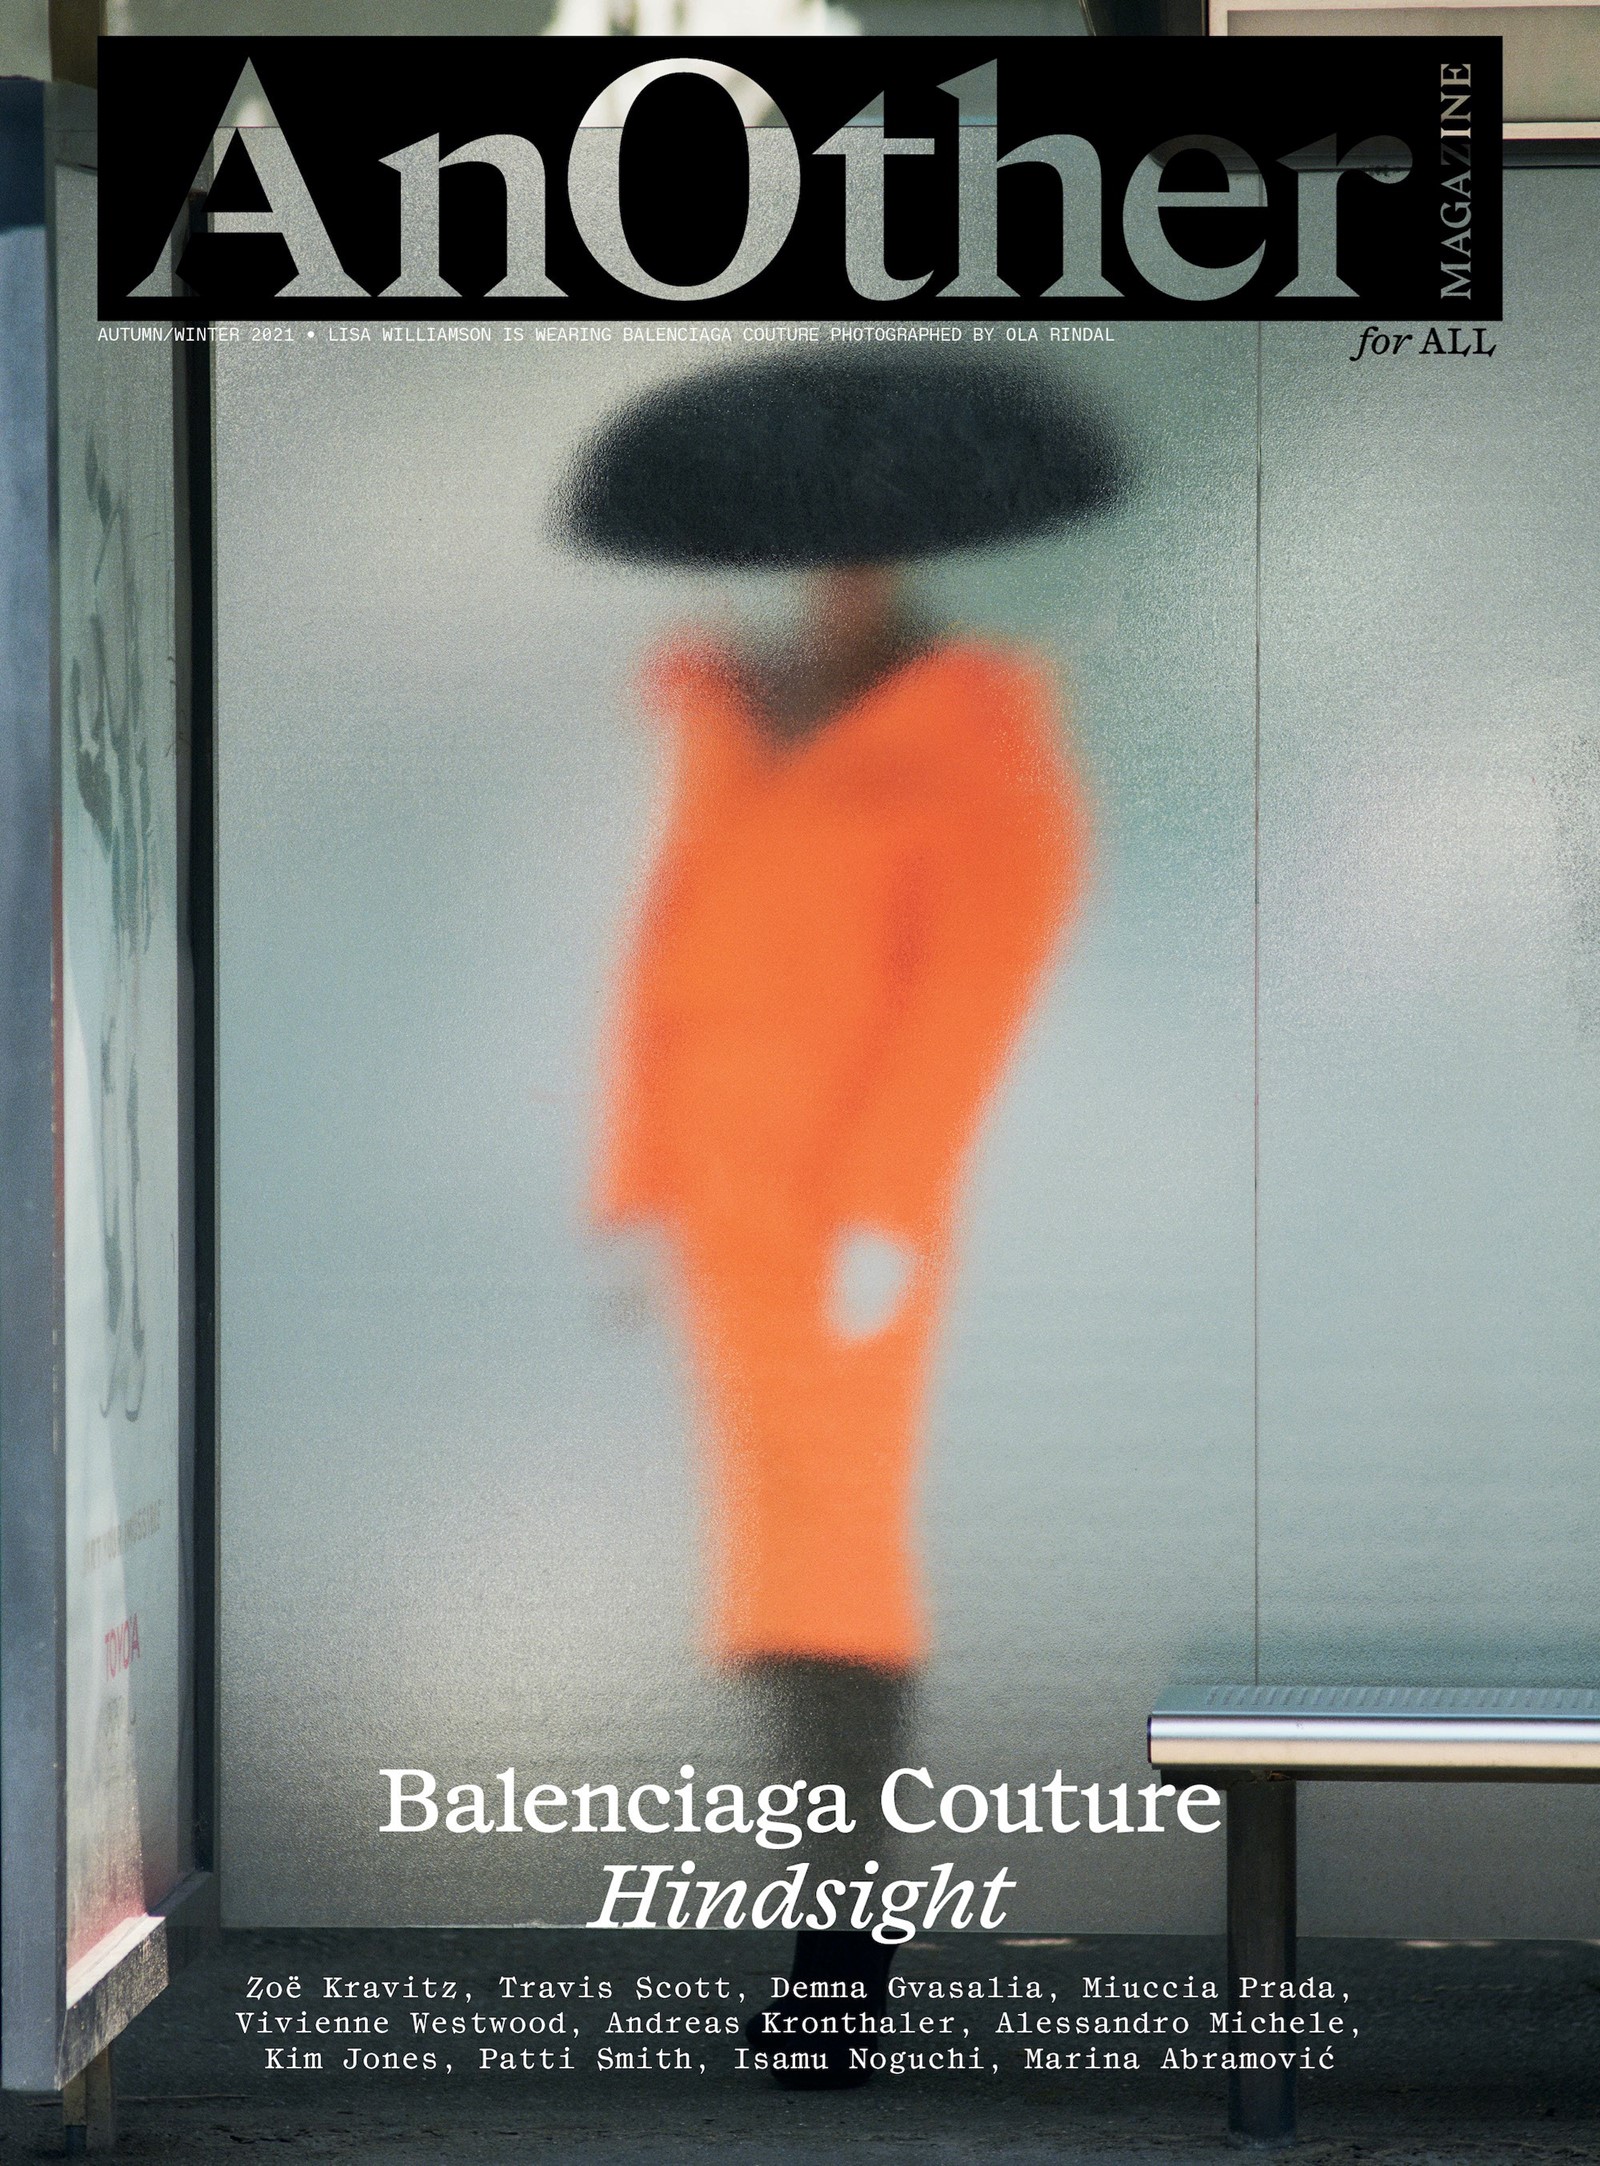 BALENCIAGA Cover AW21 Lisa Williamson BALENCIAGA COUTURE